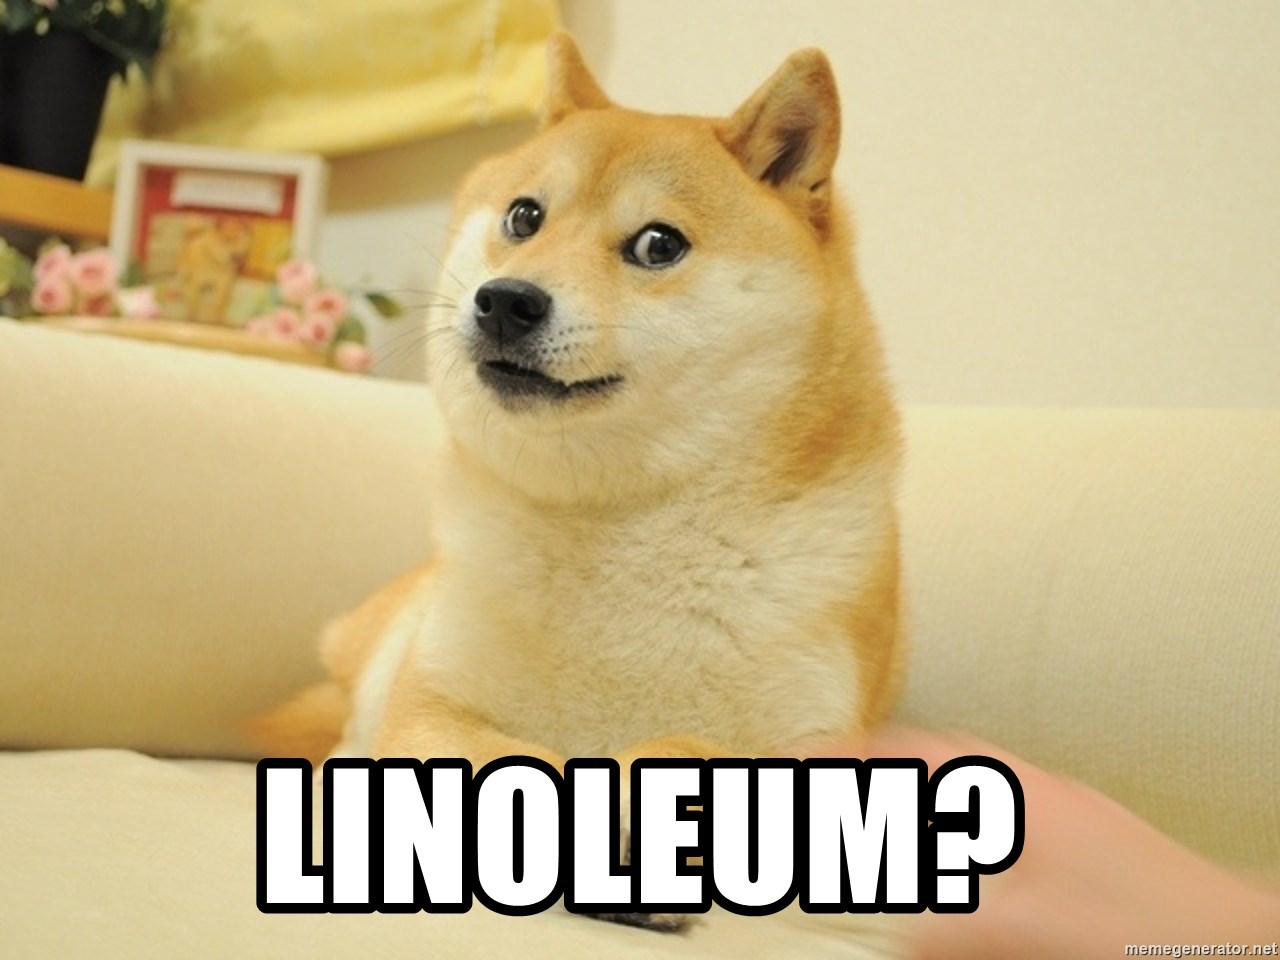 so doge - Linoleum?